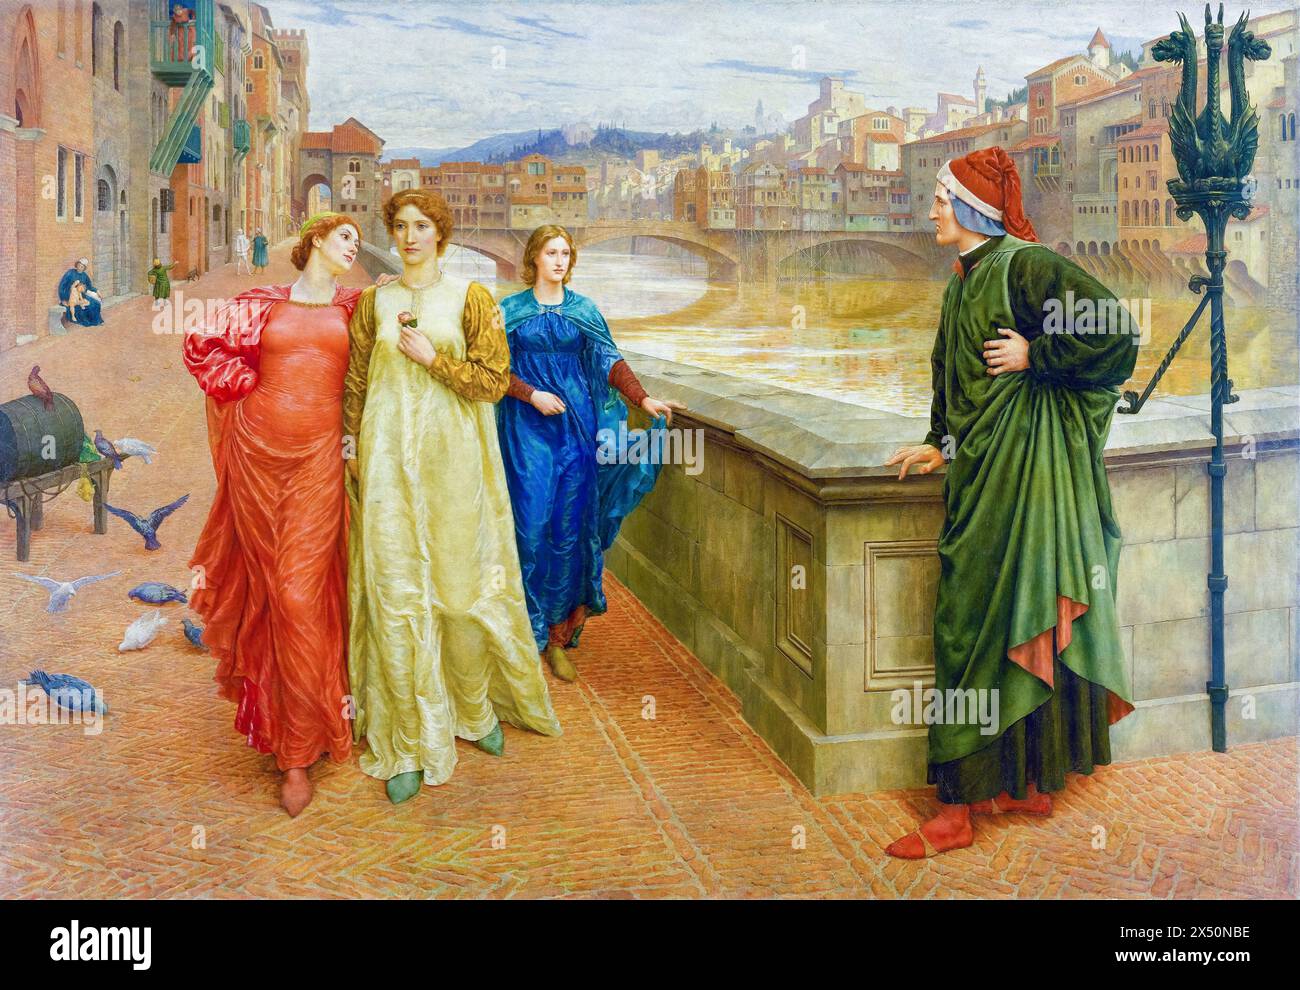 Henry James Holiday, Dante et Béatrice, peinture à l'huile sur toile, 1882-1884 Banque D'Images